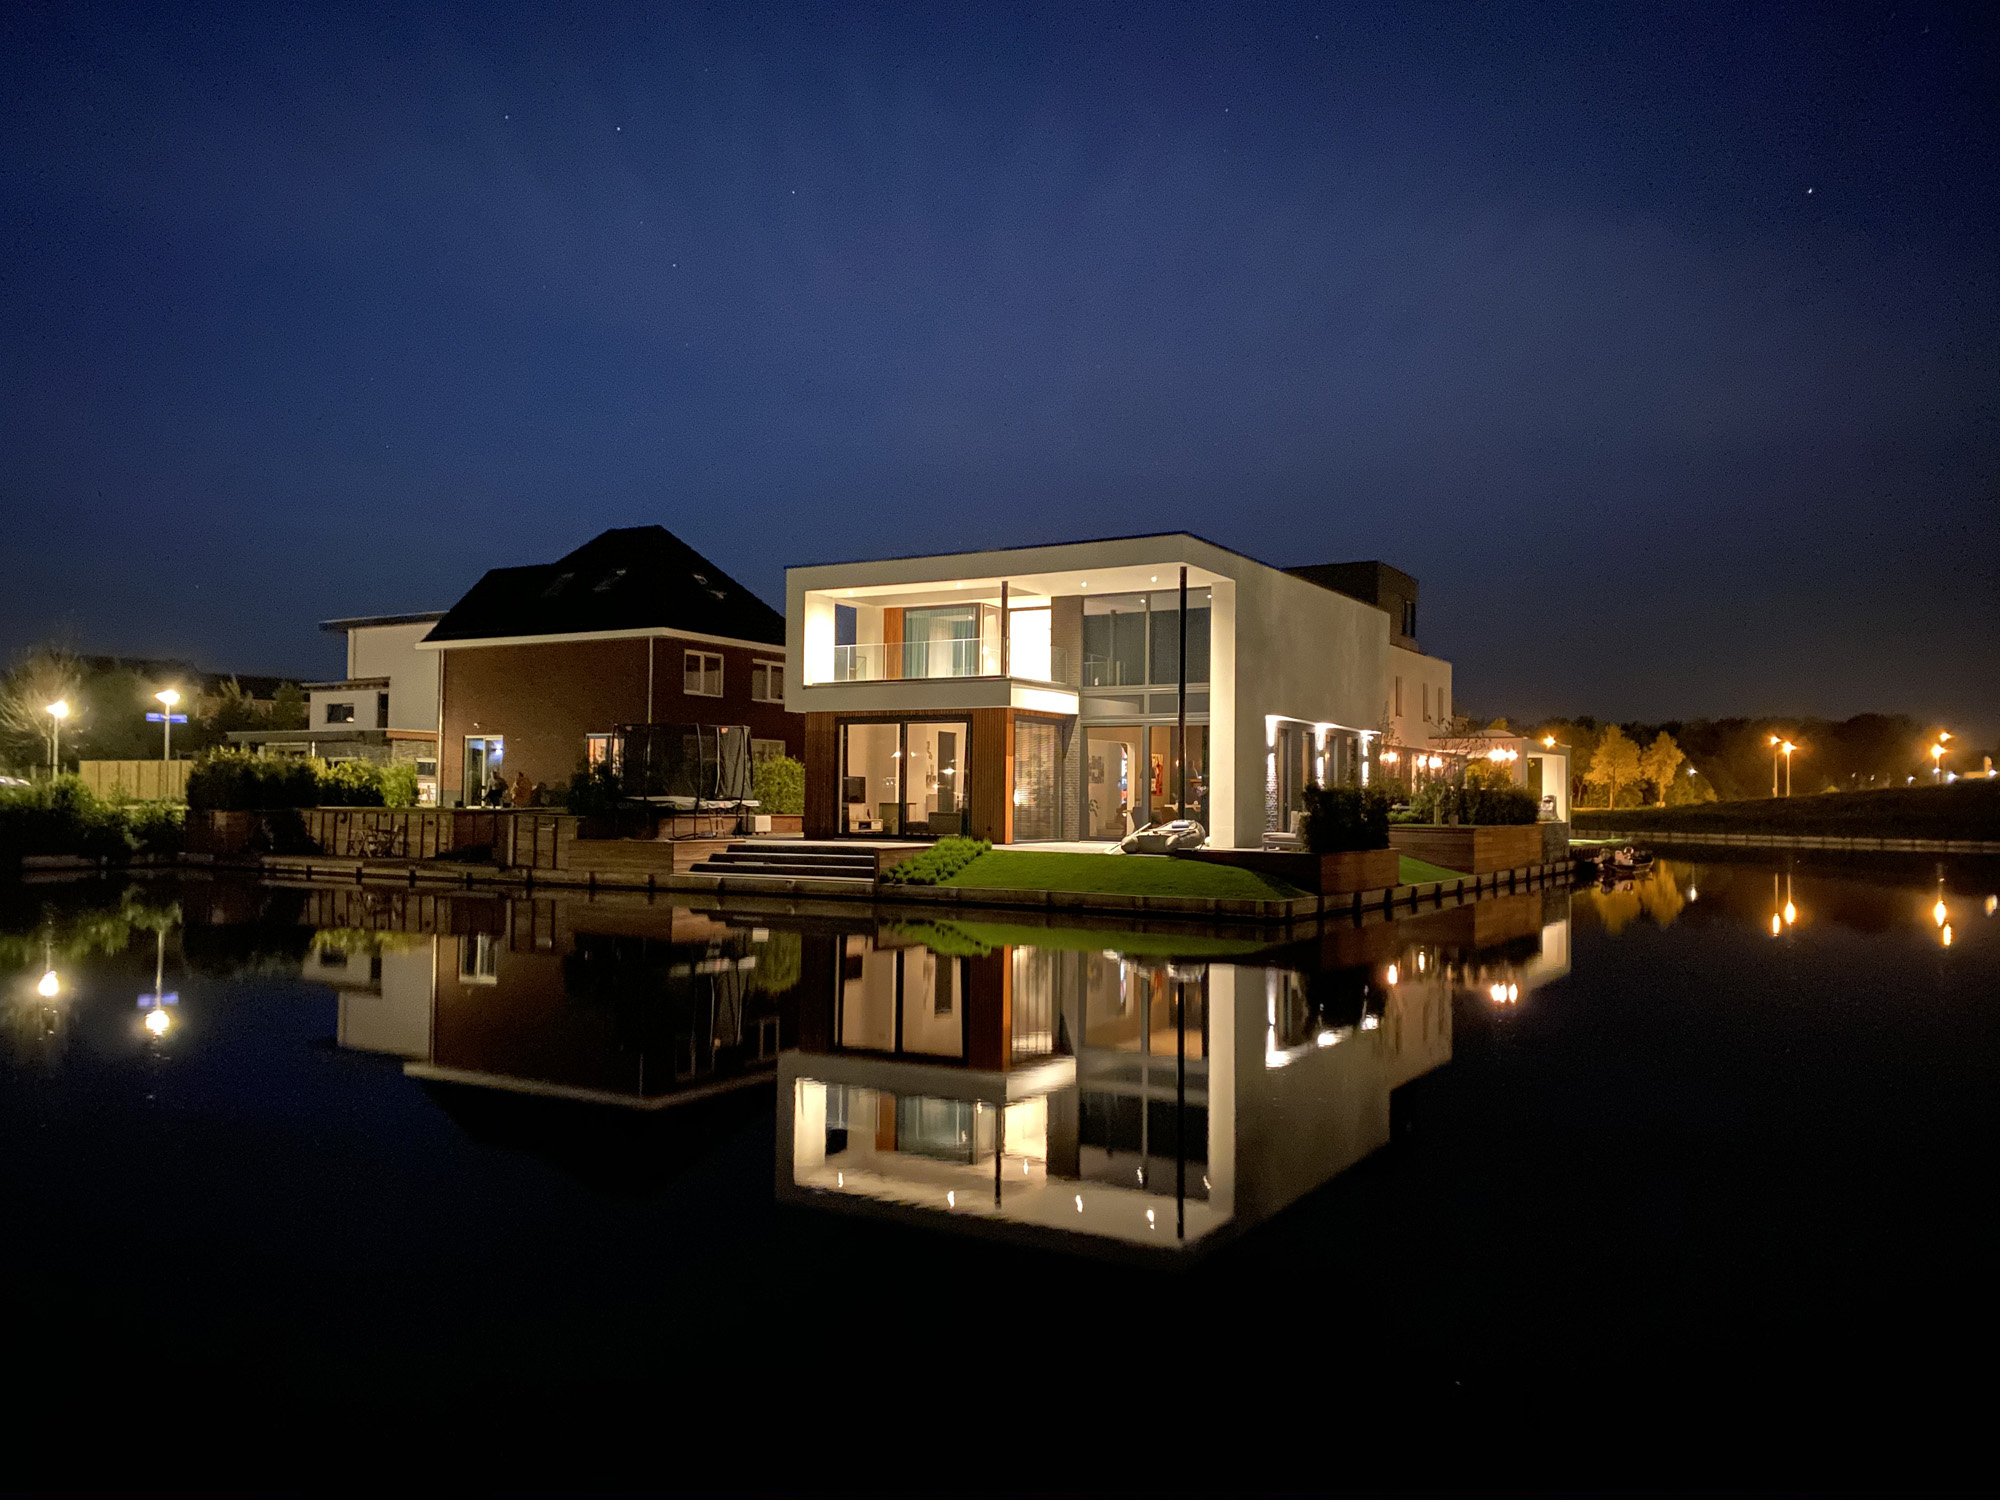 Polder villa aan het water Almere Buiten | Olof Architects